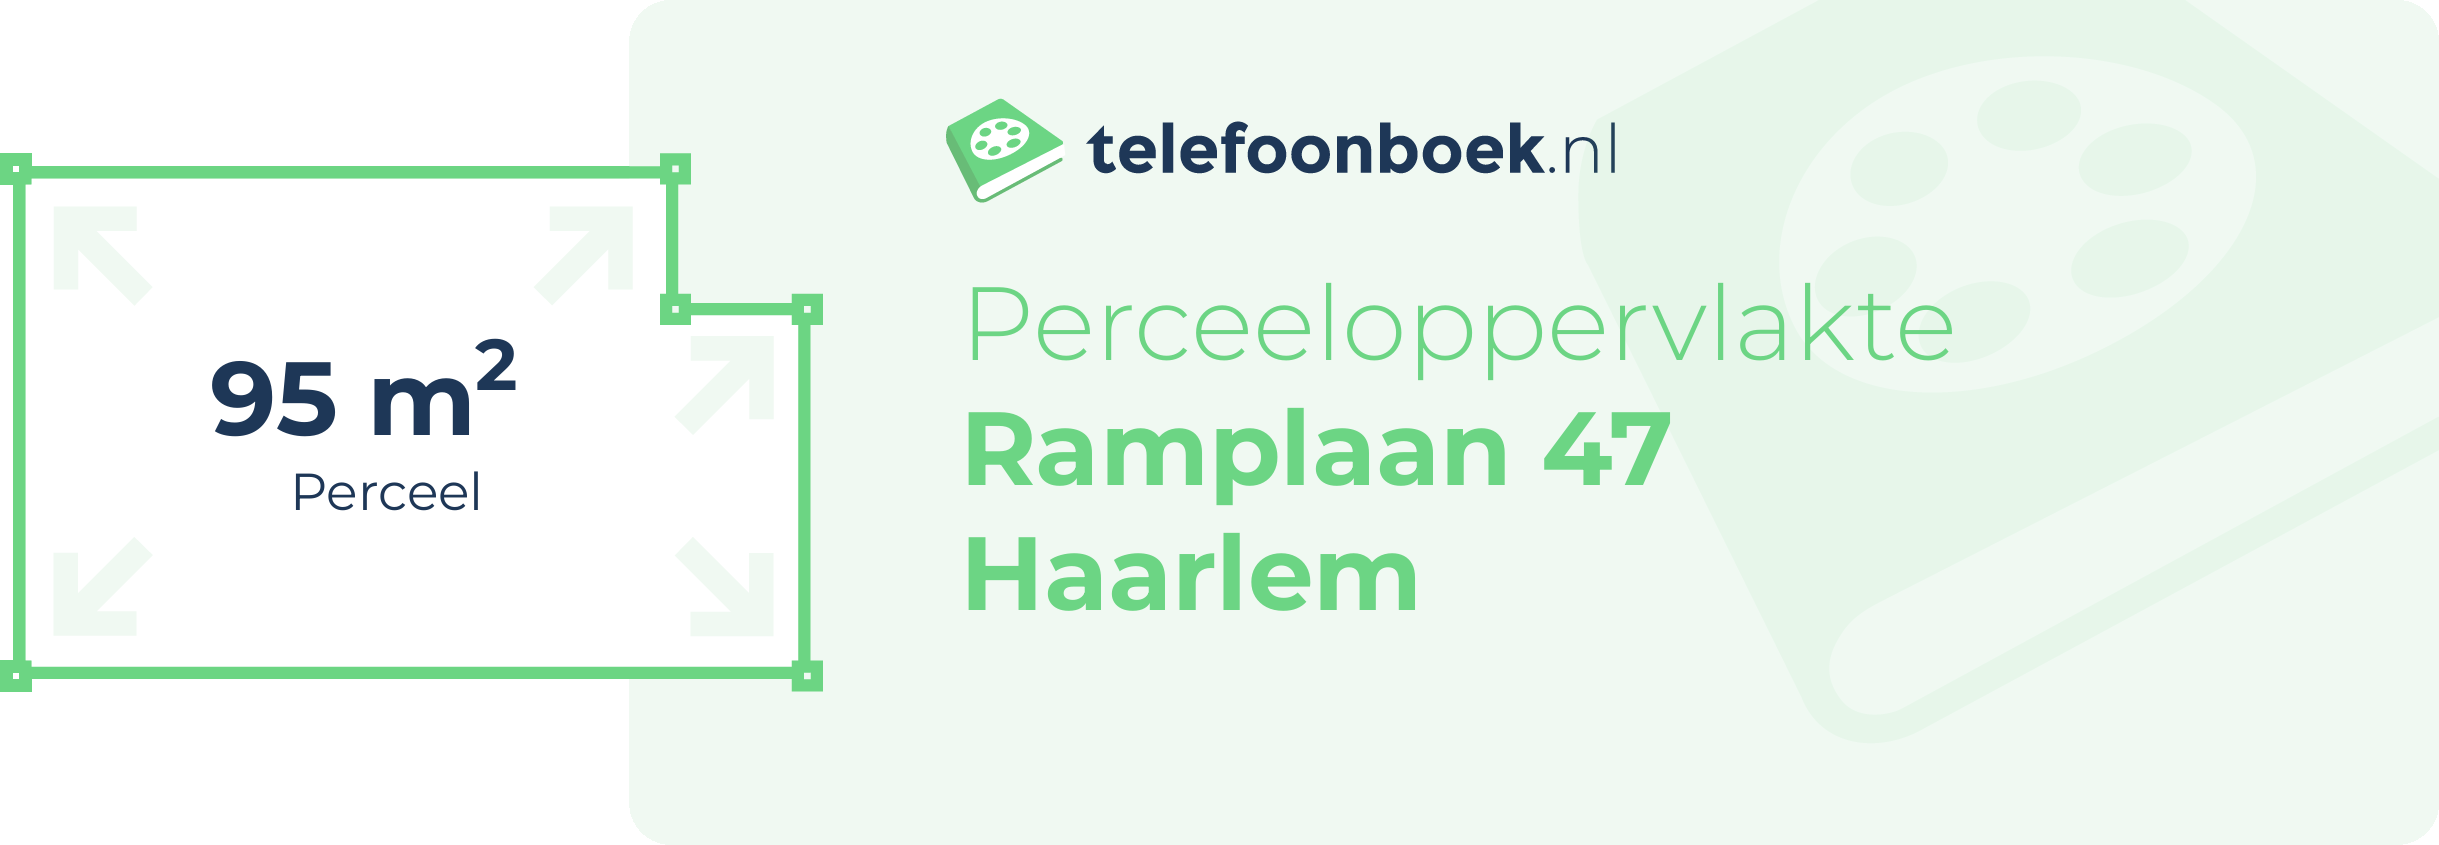 Perceeloppervlakte Ramplaan 47 Haarlem